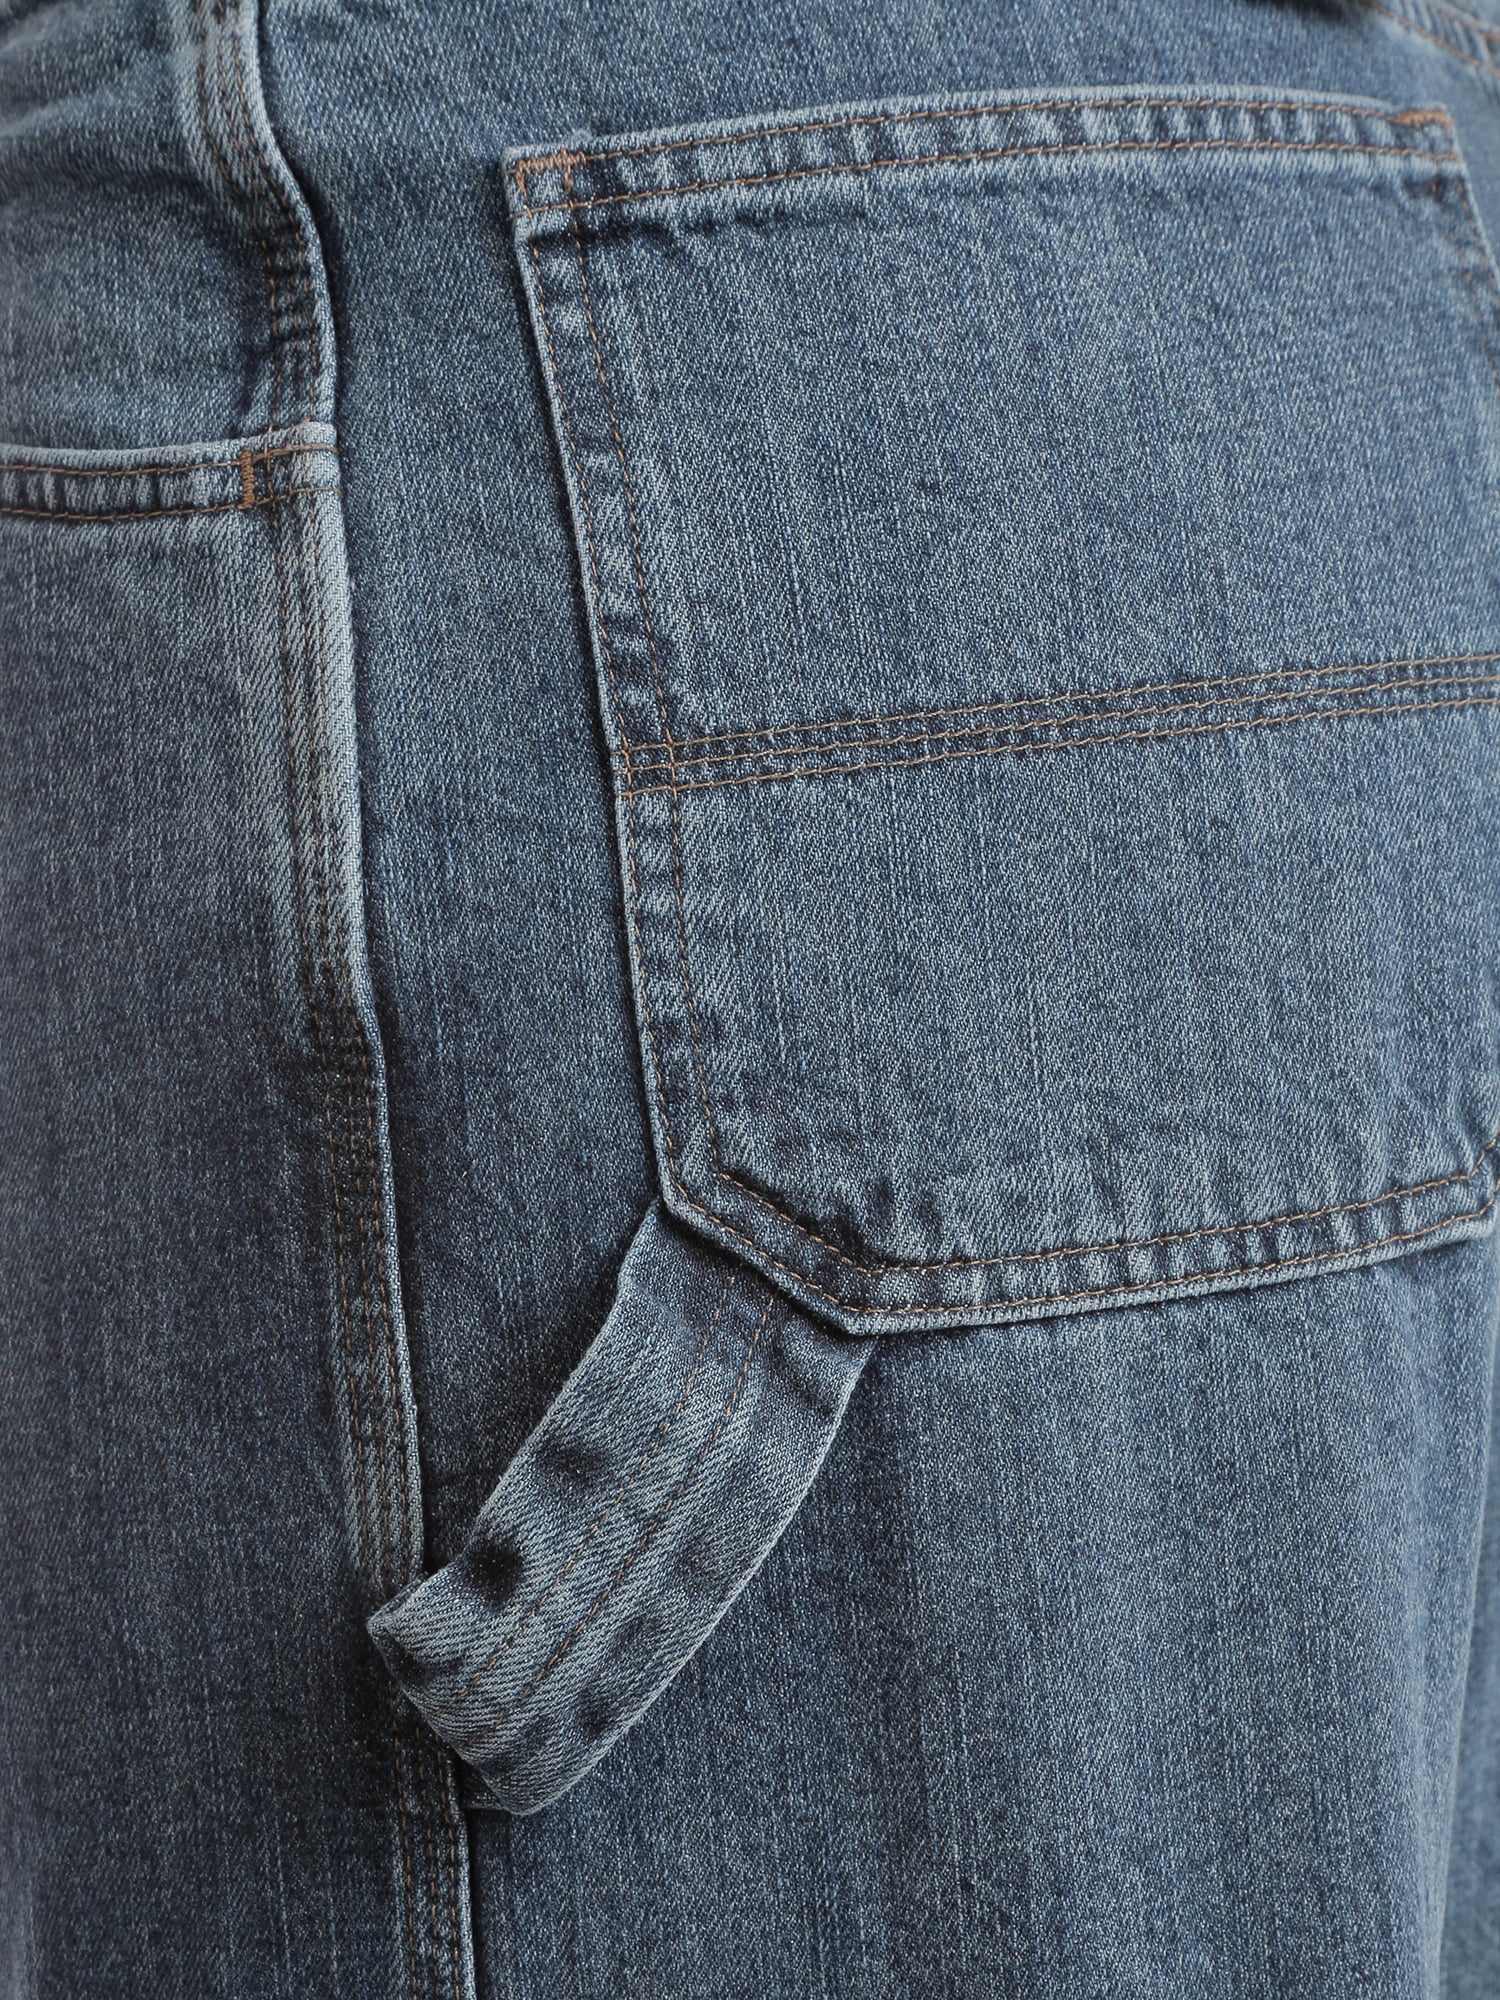 wrangler carpenter jeans kohls